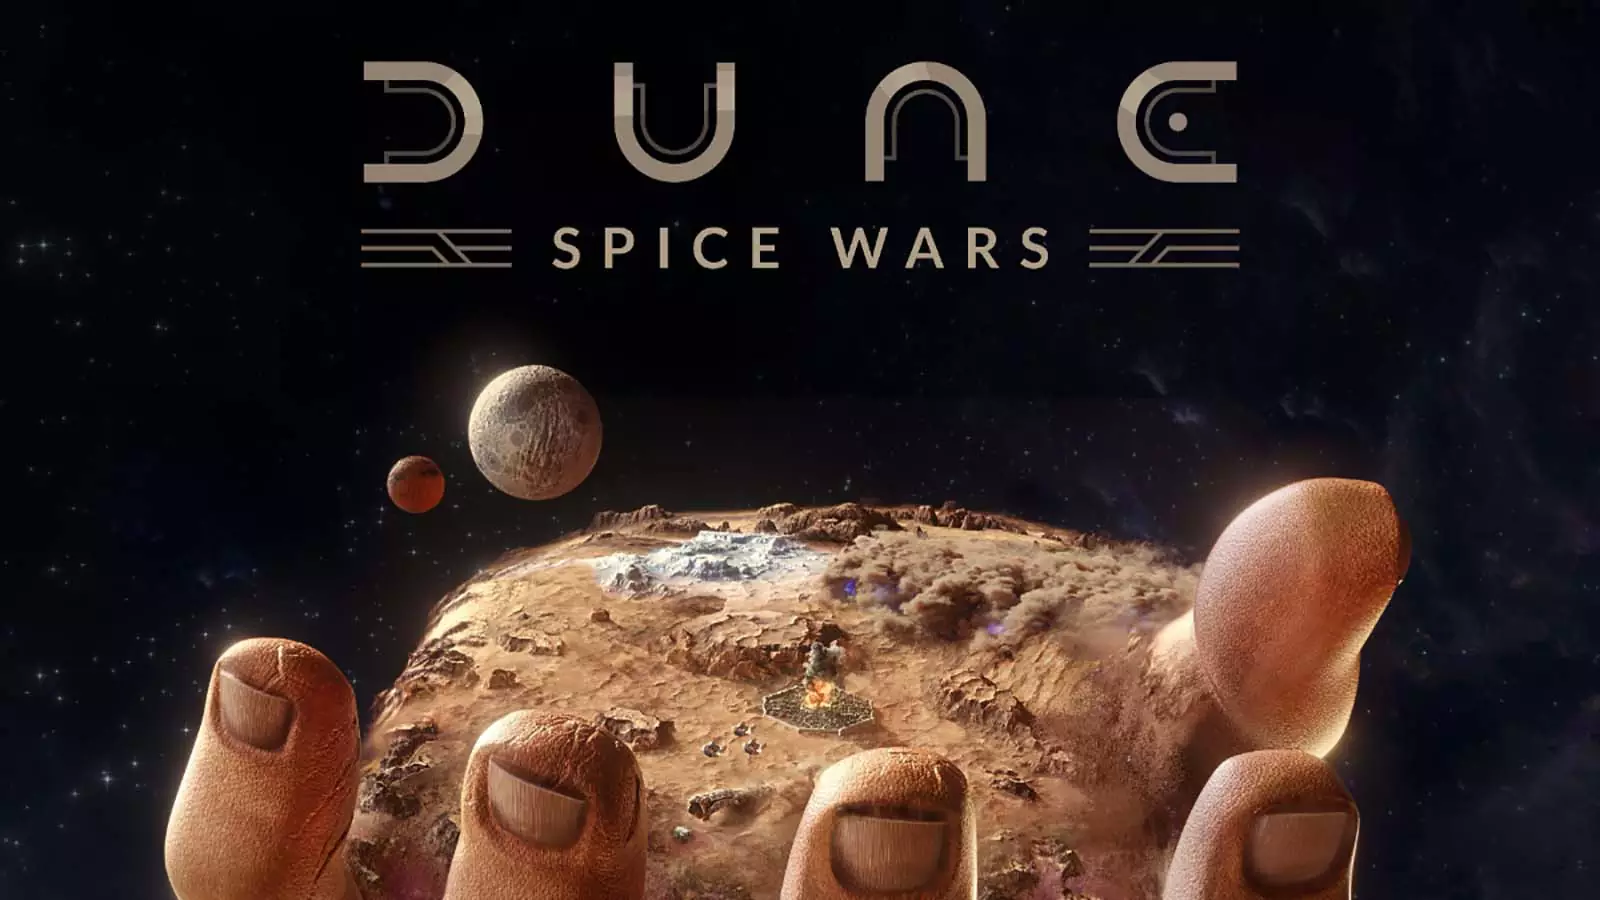 Во имя специи: вскрылось море подробностей о стратегии Dune: Spice Wars